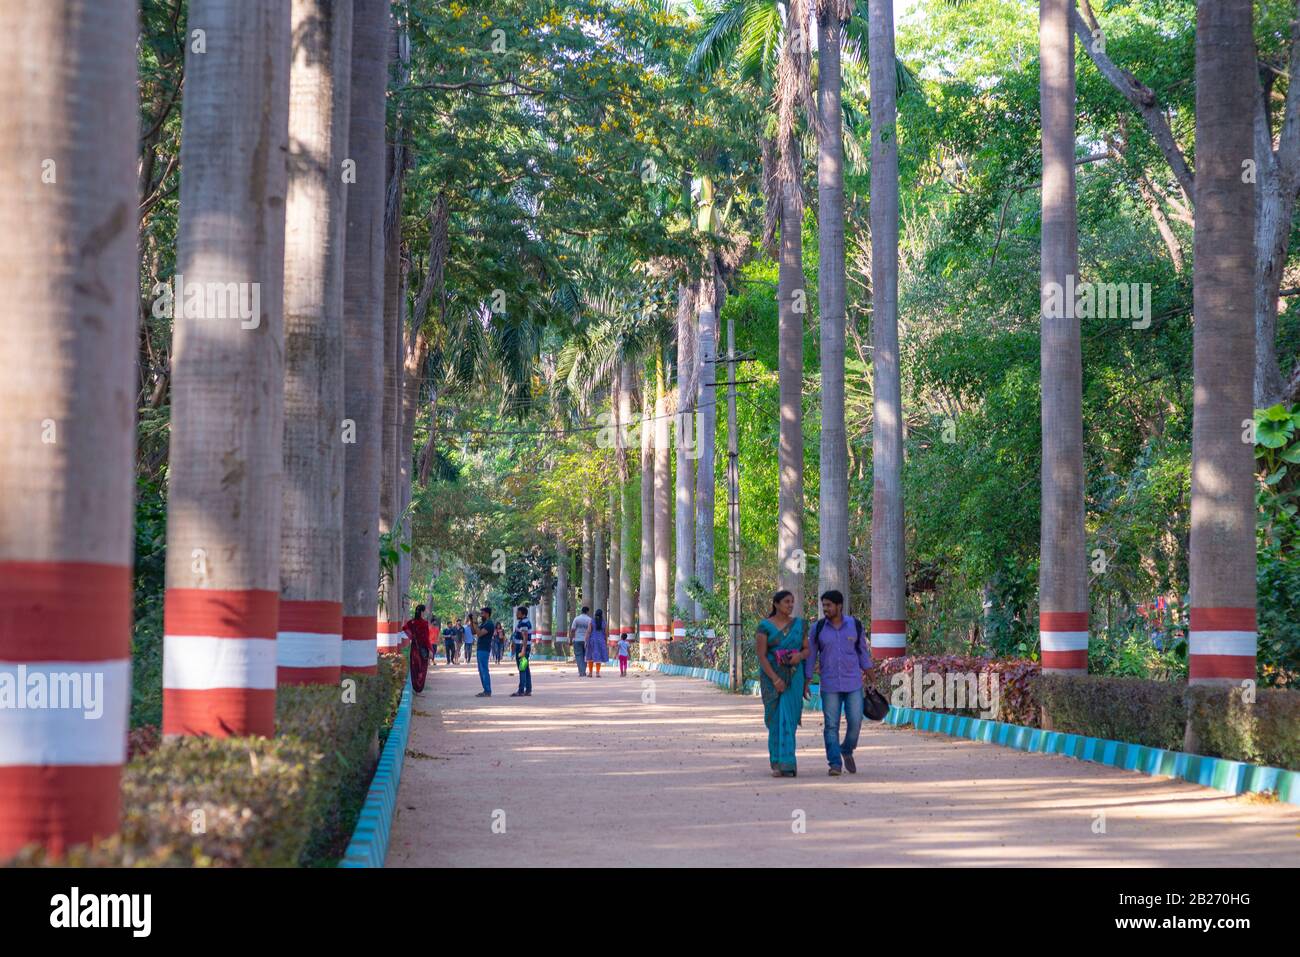 Mysore, Inde - 11 mars 2018 : un couple qui s'est promené sur une allée de palmier dans un parc près du lac Karanji, avec d'autres personnes en arrière-plan. Banque D'Images